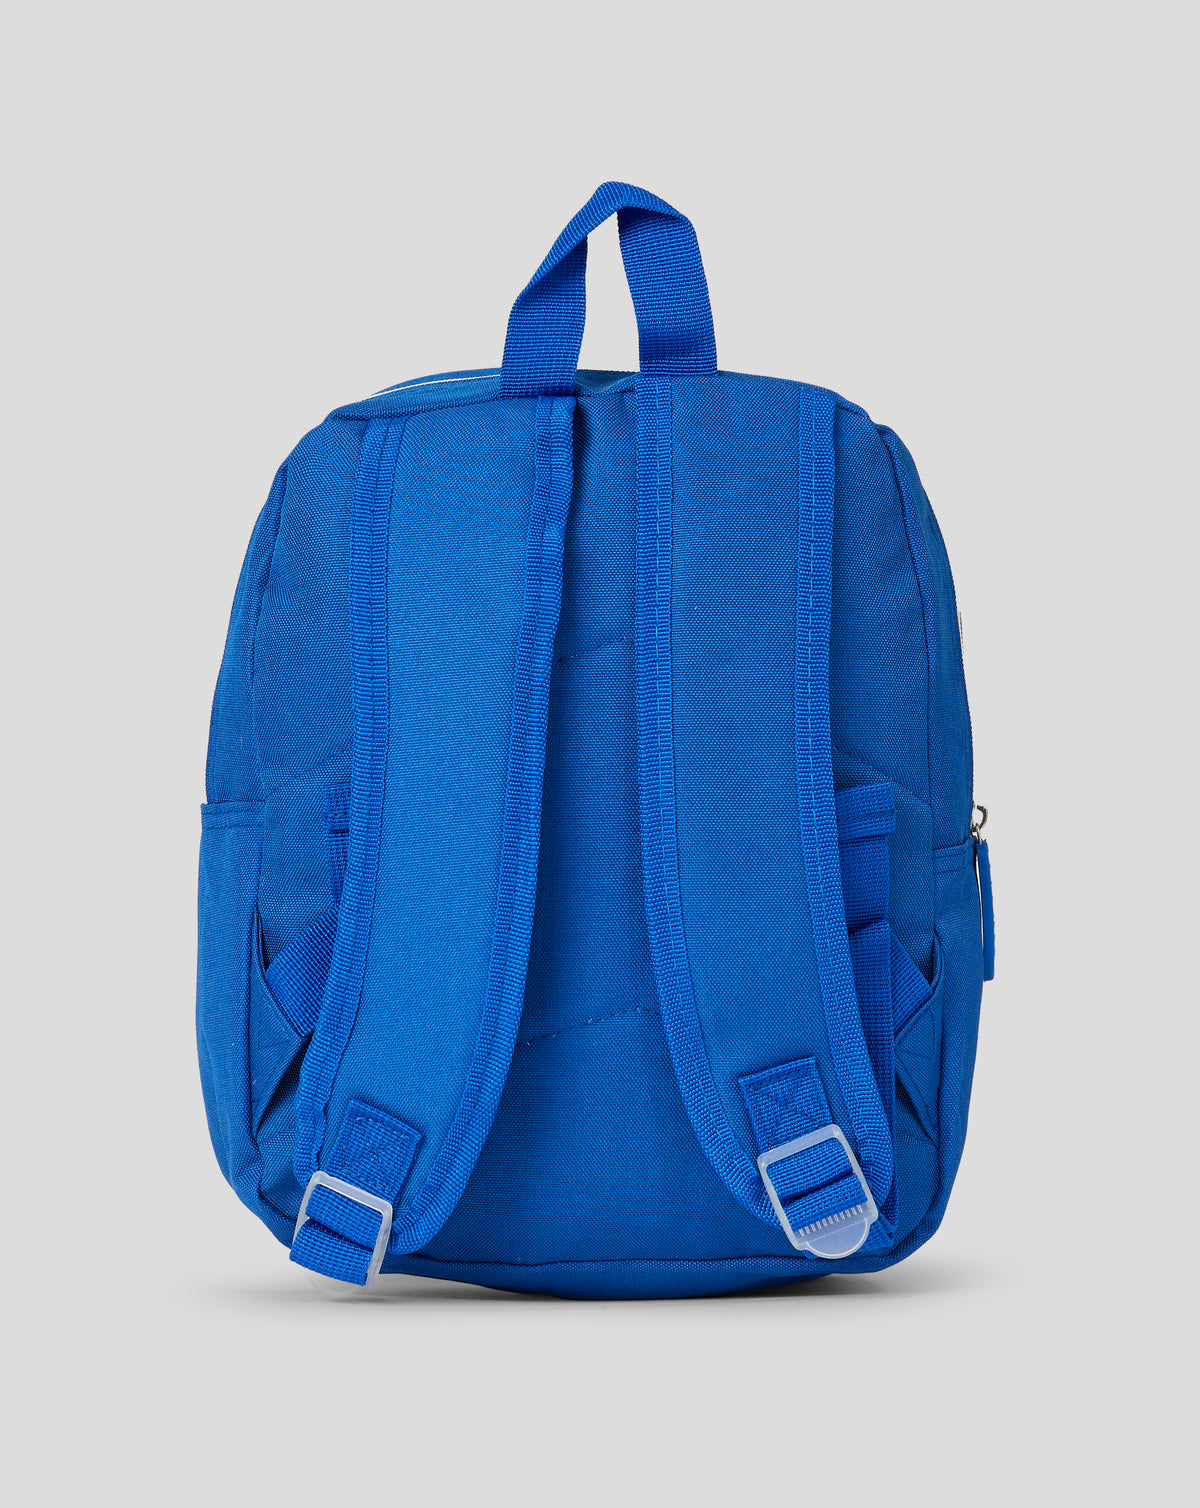 Broxi Backpack